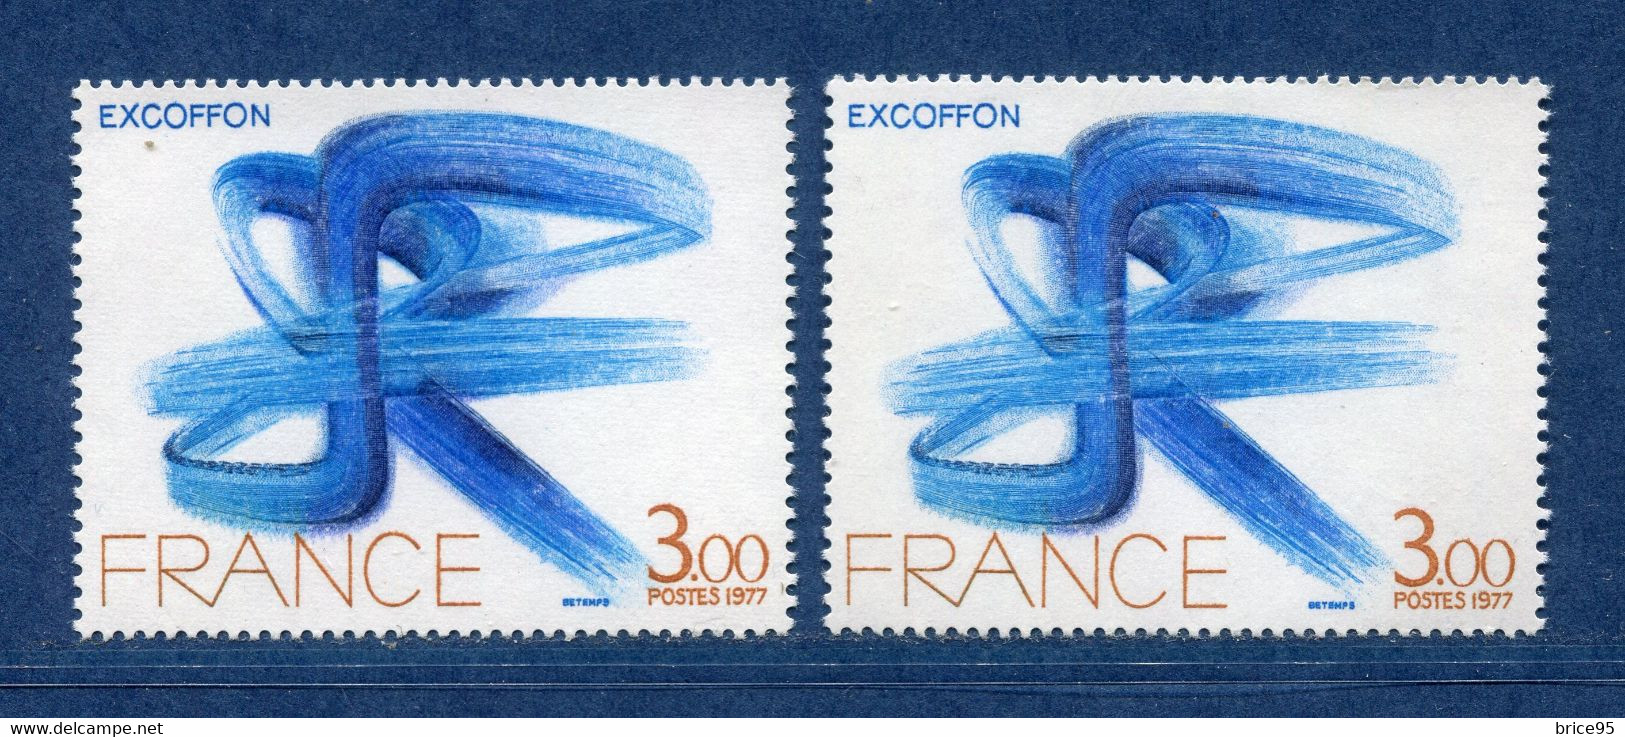 ⭐ France - Variété - YT N° 1951 - Couleurs - Pétouilles - Neuf Sans Charnière - 1977 ⭐ - Unused Stamps